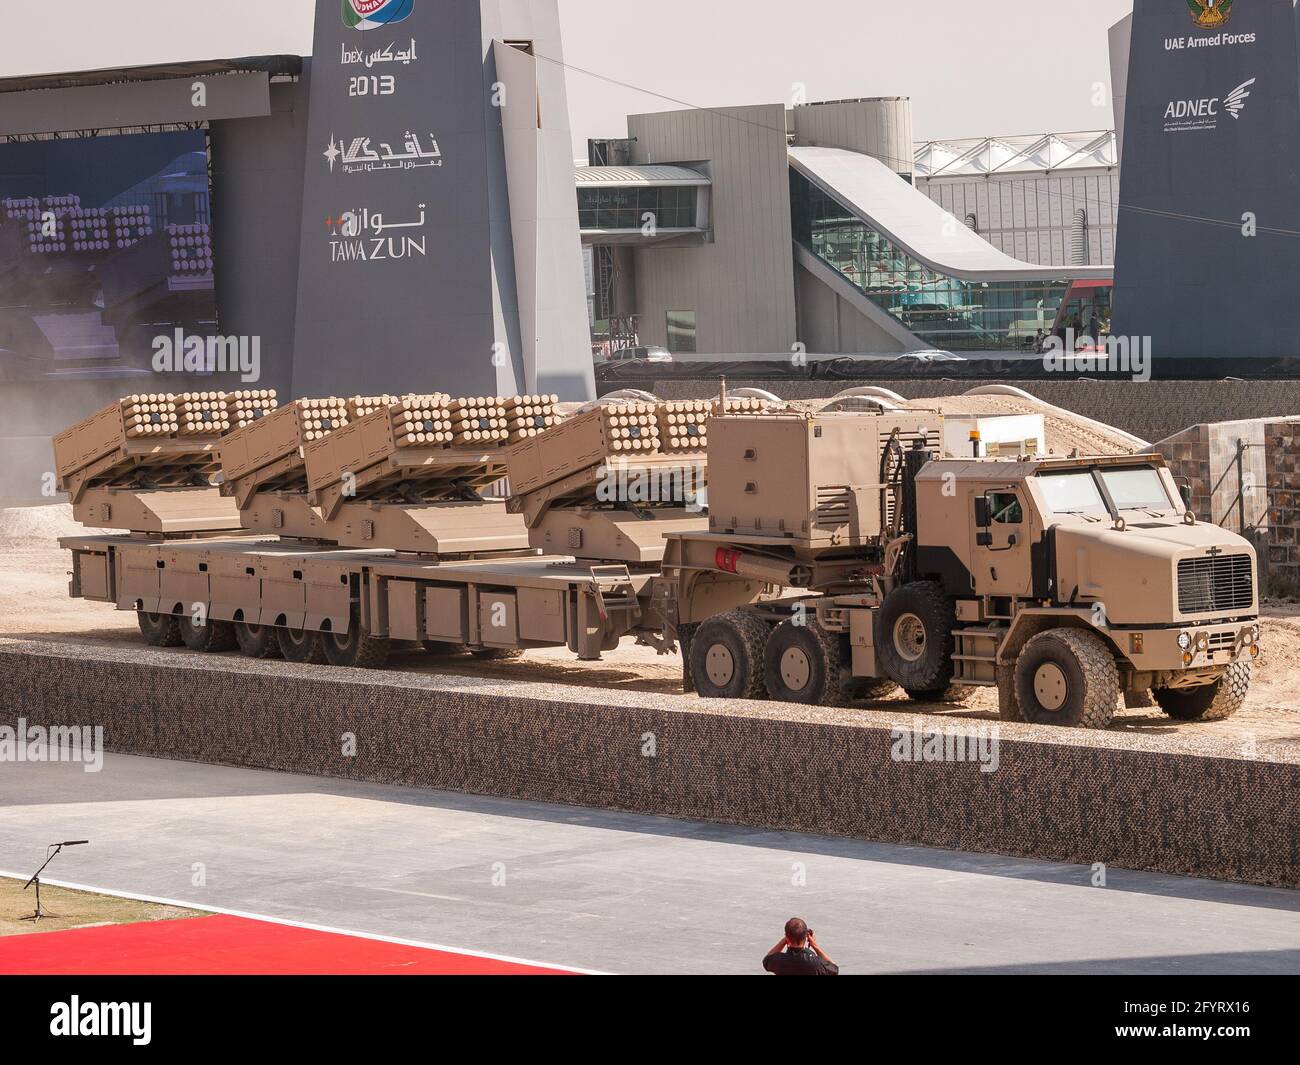 Abu Dhabi, Émirats Arabes Unis - 19 février 2013 : lanceur de plusieurs Cradle de Jobaria Defense Systems Banque D'Images